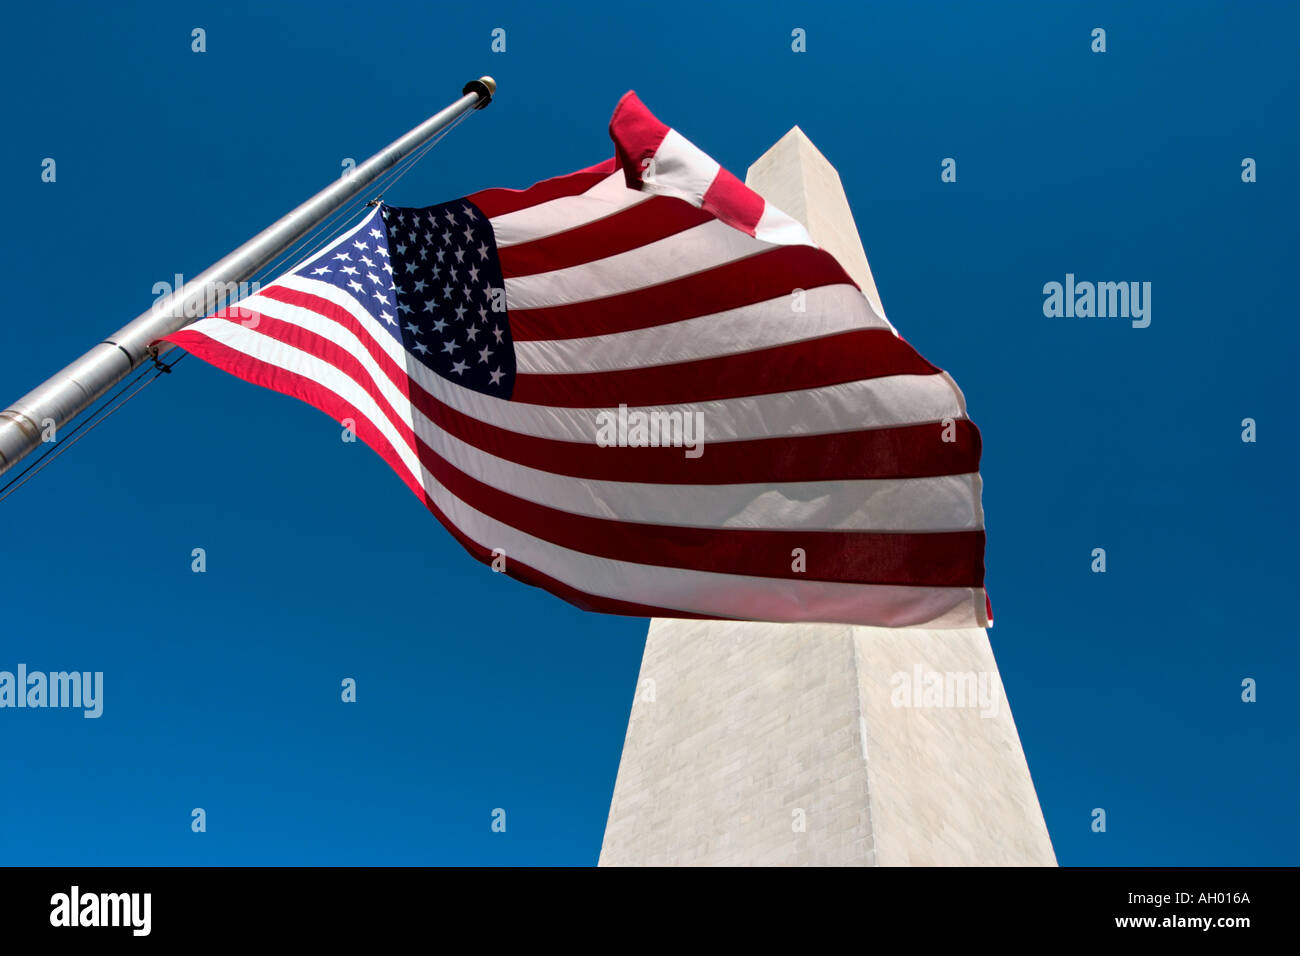 Washington Monument et drapeau américain, le Mall, Washington DC, USA Banque D'Images